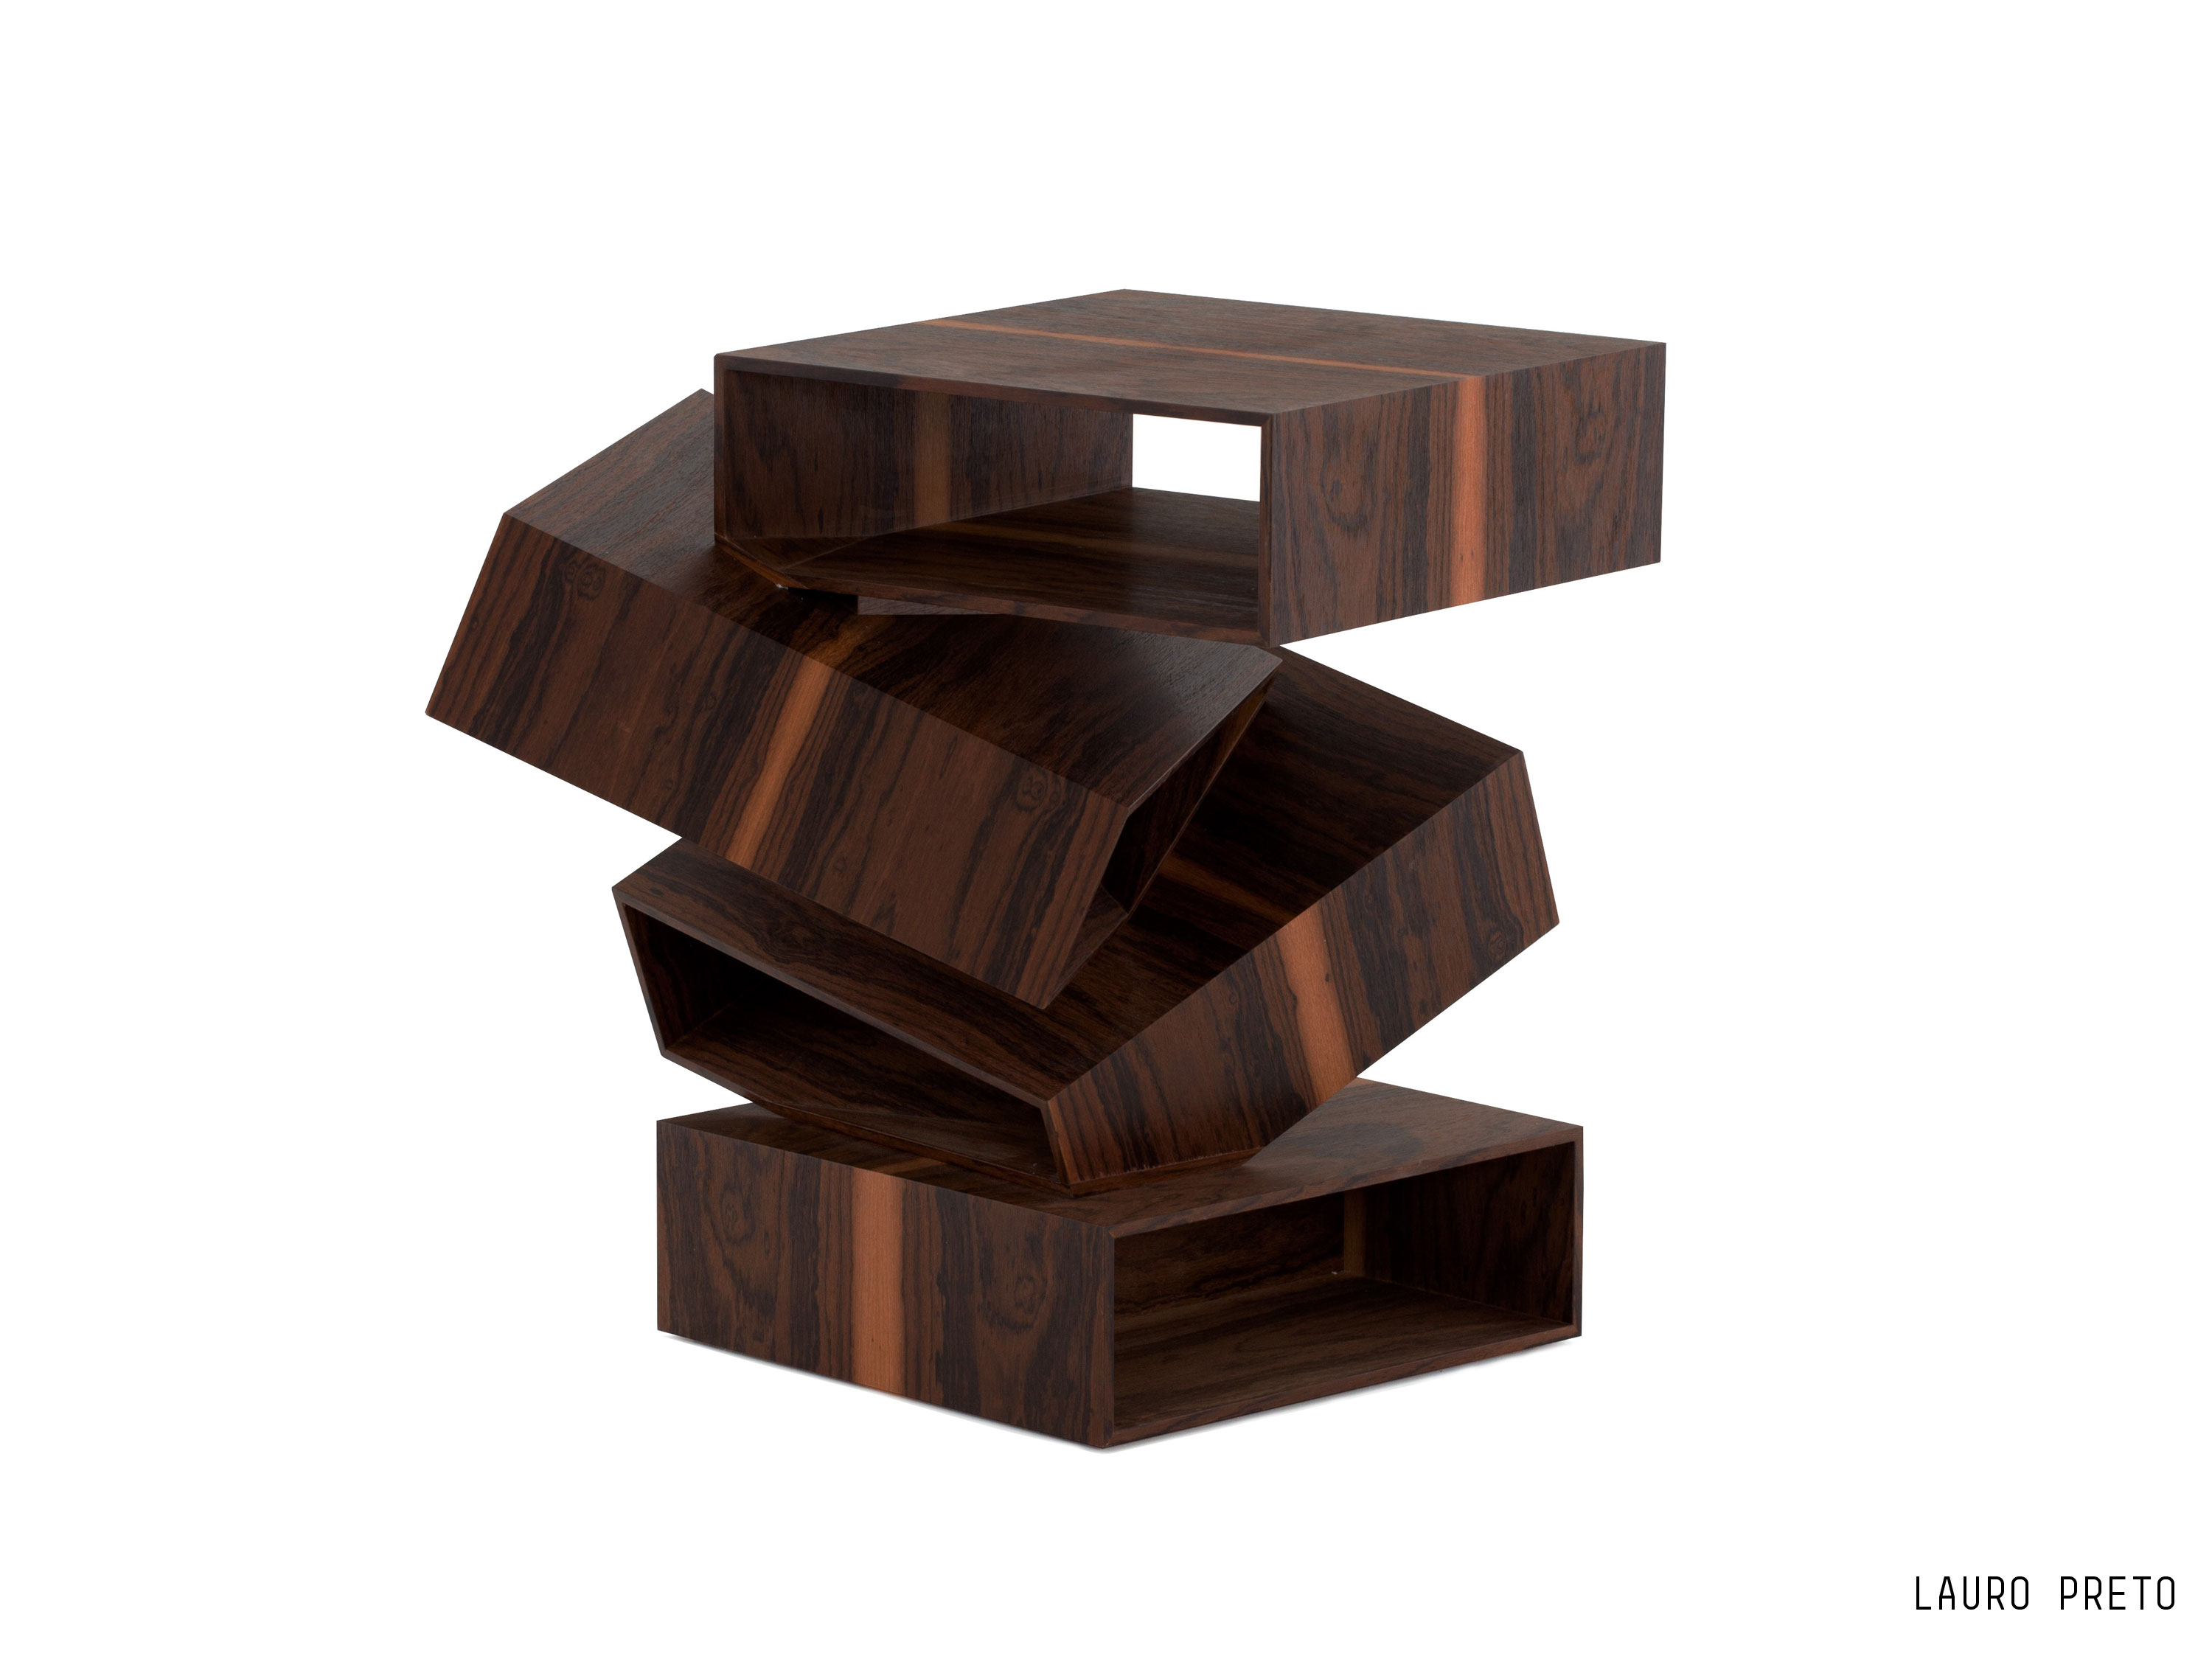 Porro, image:prodotti - Porro Spa - Balancing Boxes